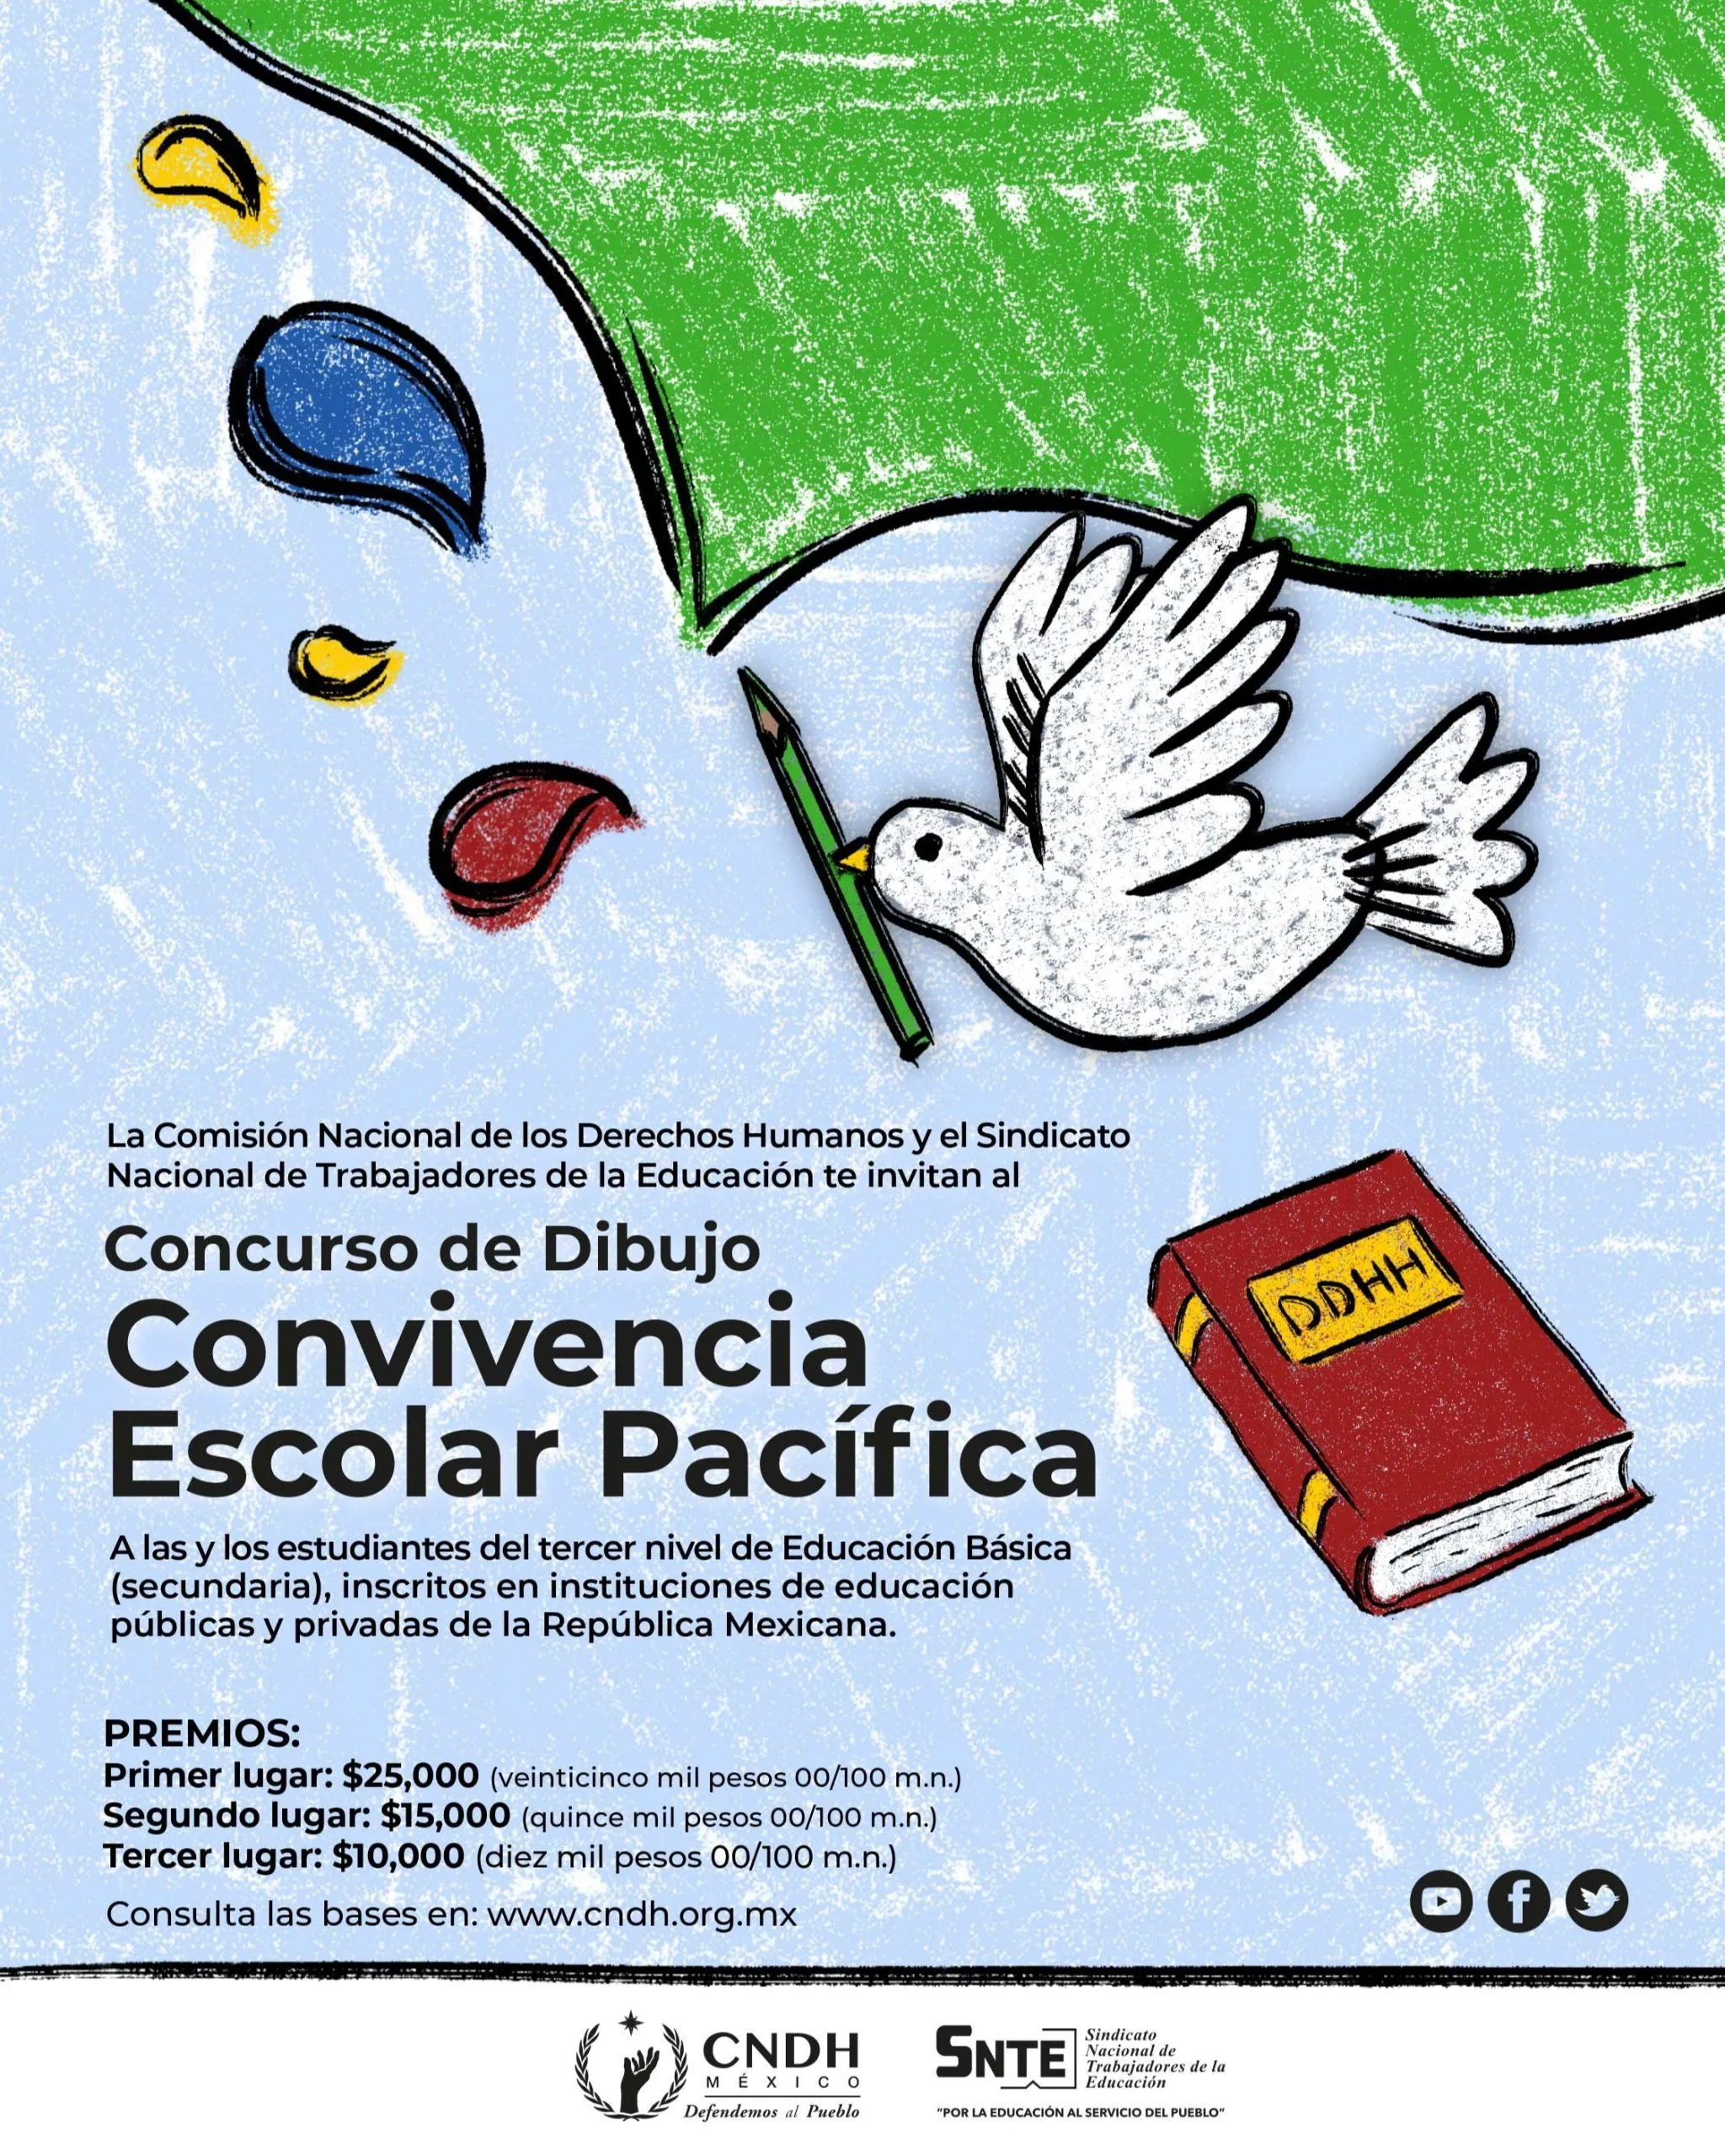 Concurso de Dibujo Convivencia Escolar y Pacífica - SNTE